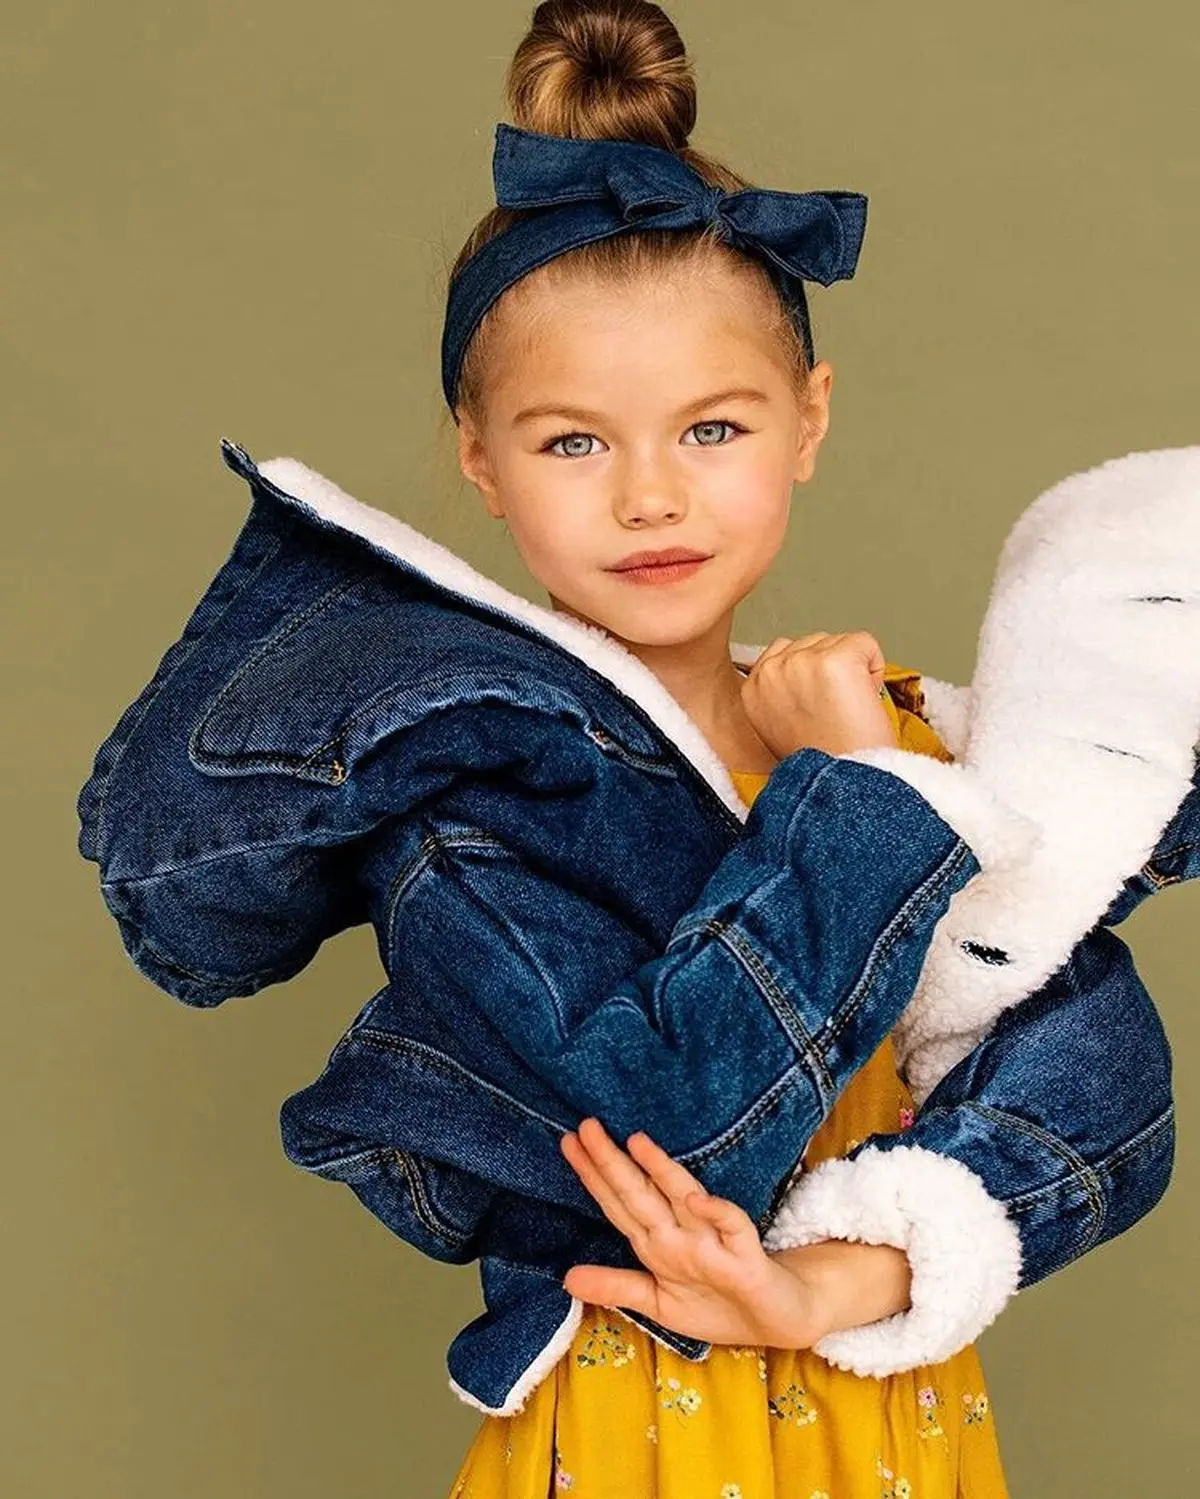 آلینا یاکوپووا؛ مدل ۶ ساله روسی و «زیباترین دختر جهان» با ۲۲٫۰۰۰ فالوور اینستاگرامی